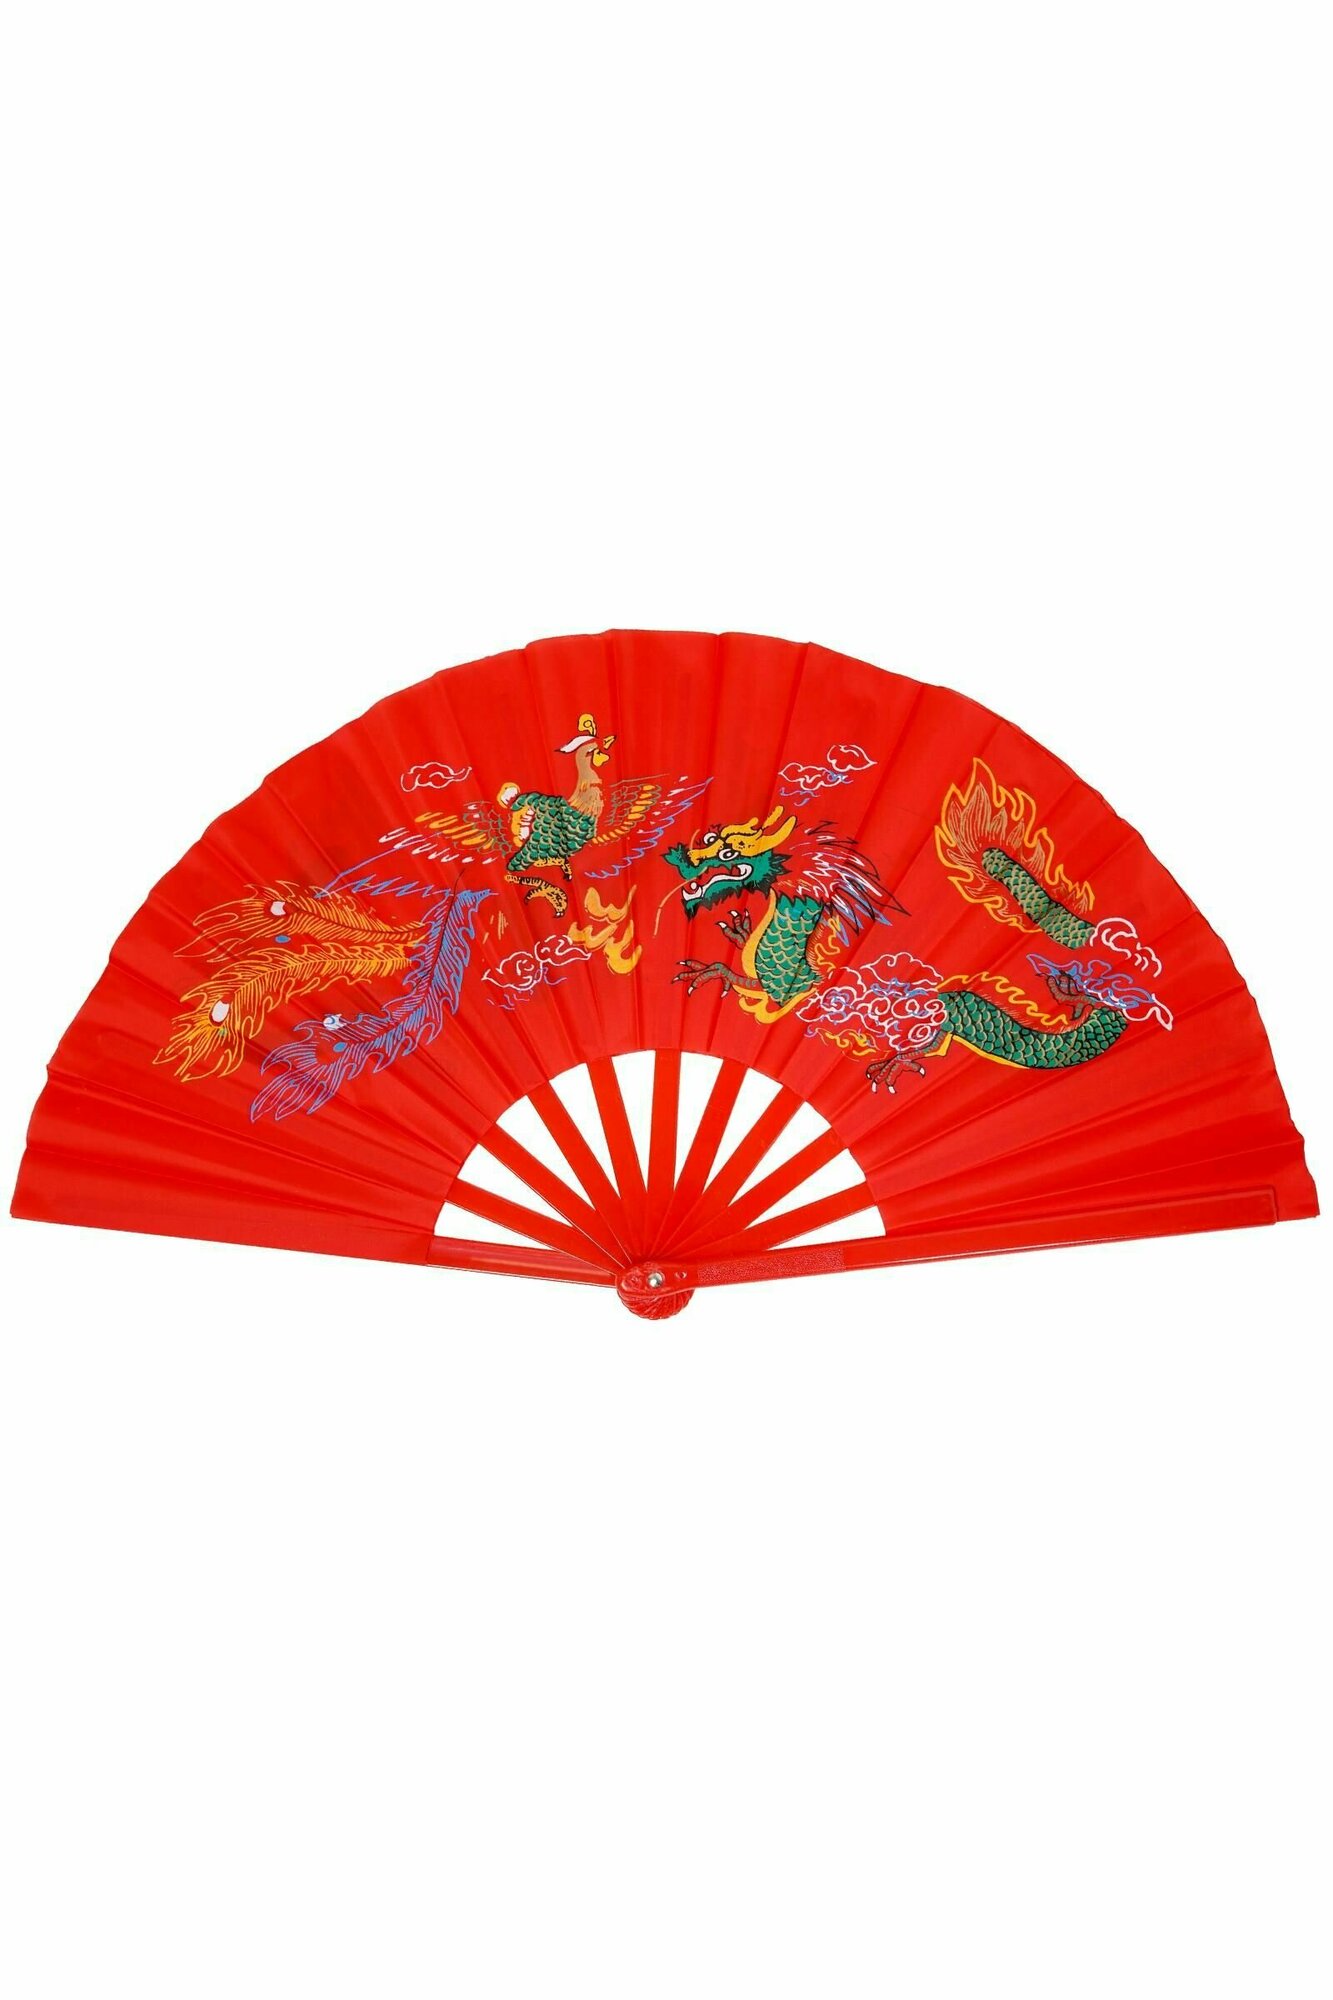 Веер складной ручной/ красный цвет, 62 см/для танцев/ веер китайский японский с рисунком дракона